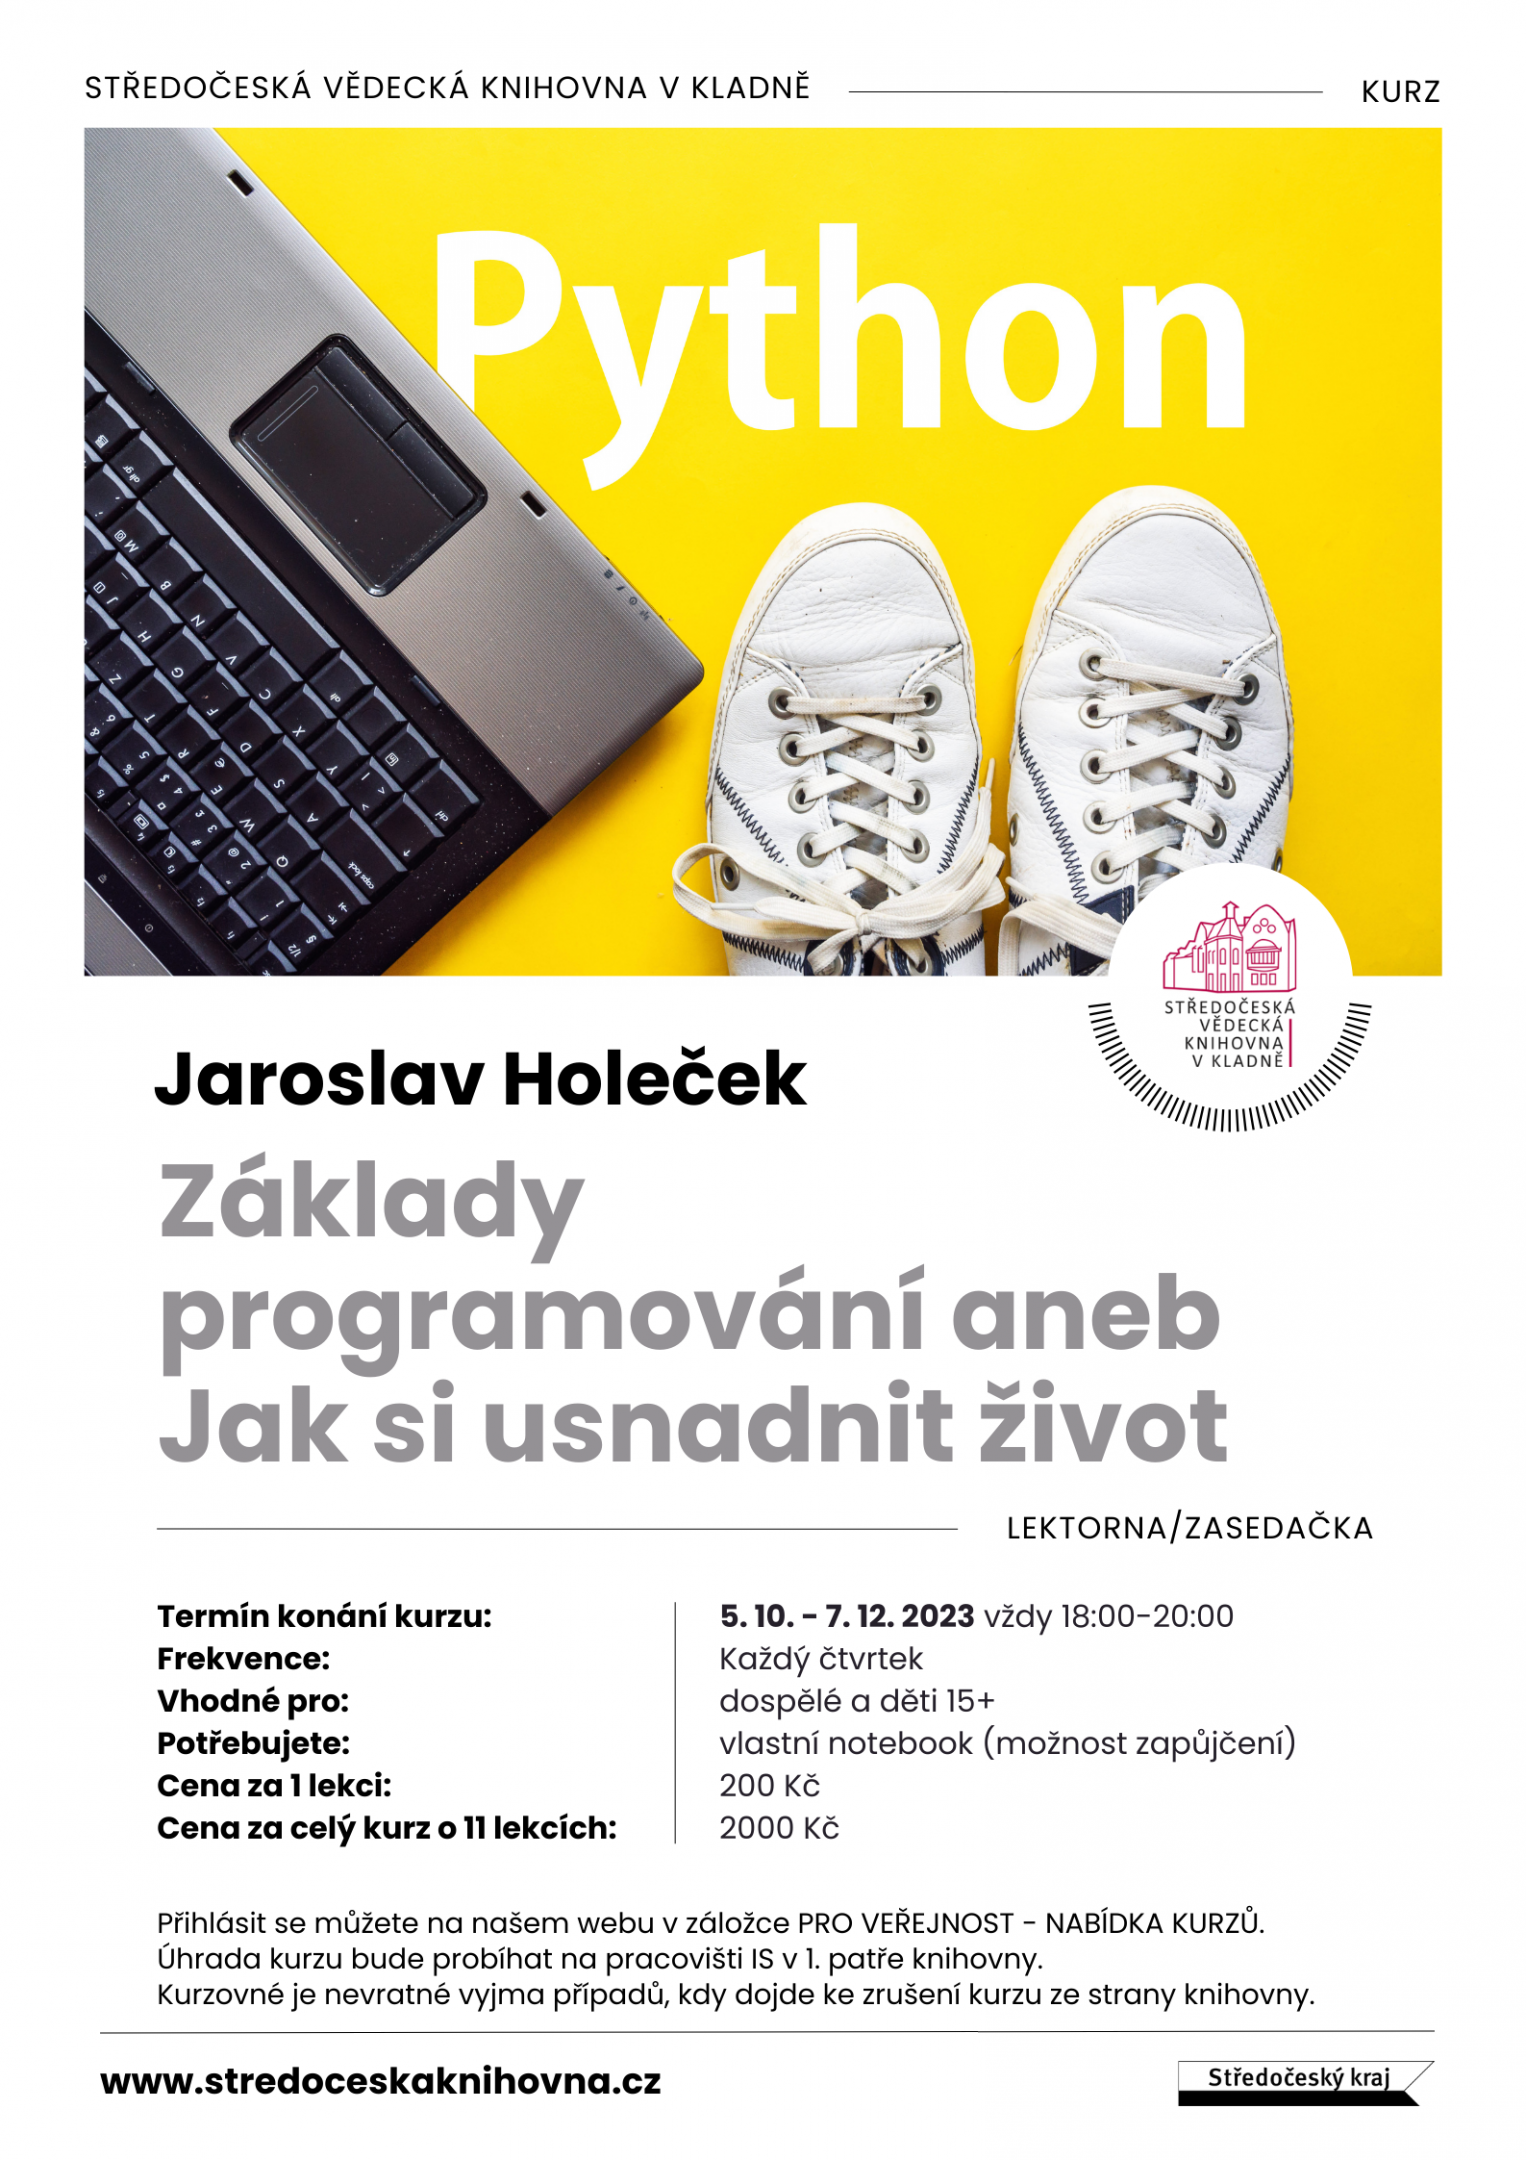 Fotogalerie Jaroslav Holeček: Základy programování - Python